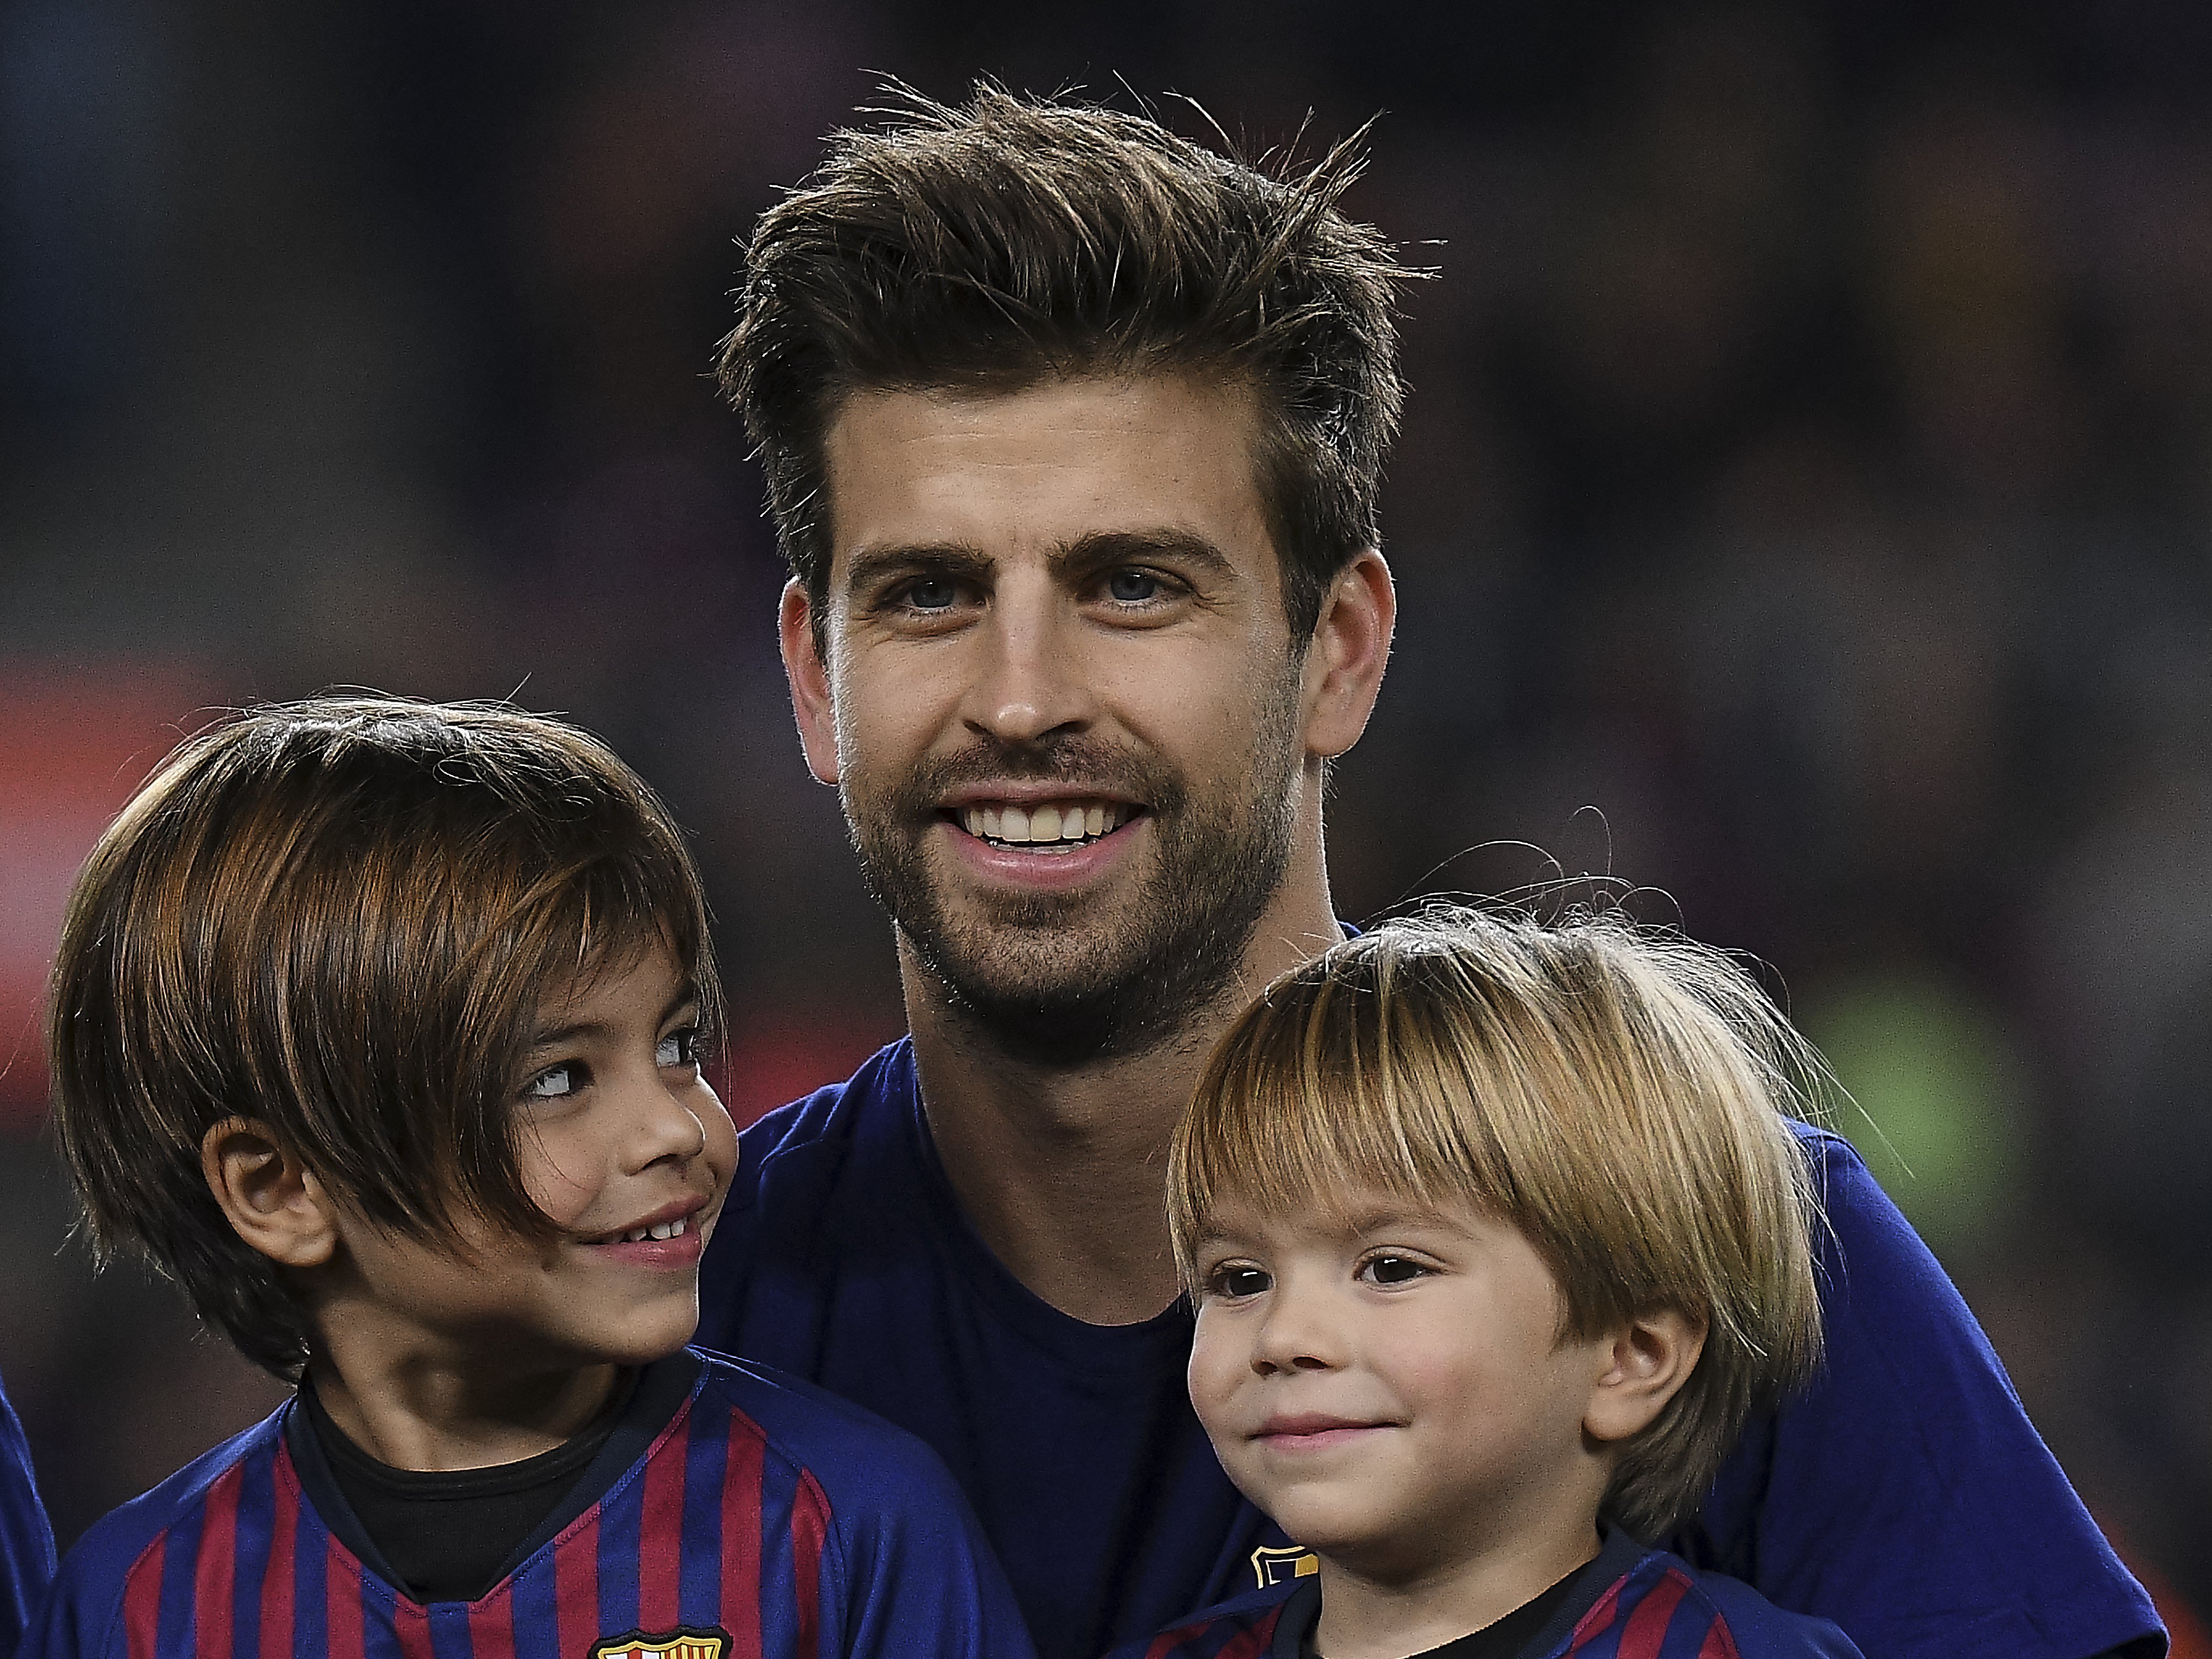 Inèdita i tendra imatge de Piqué, Suárez i Messi al Barça amb els fills grans